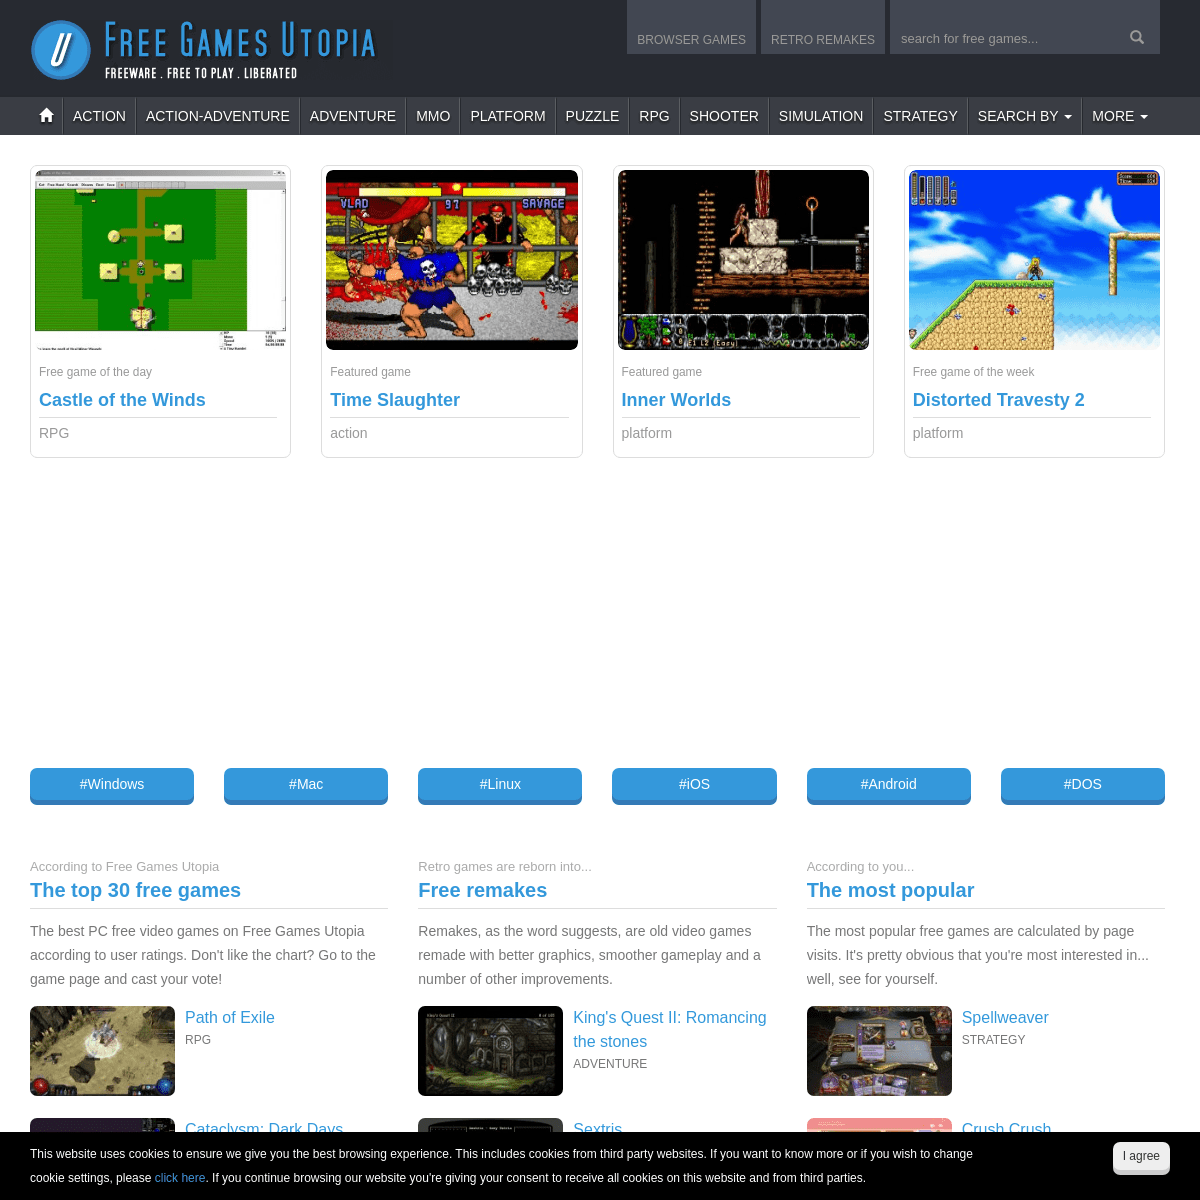 A complete backup of freegamesutopia.com